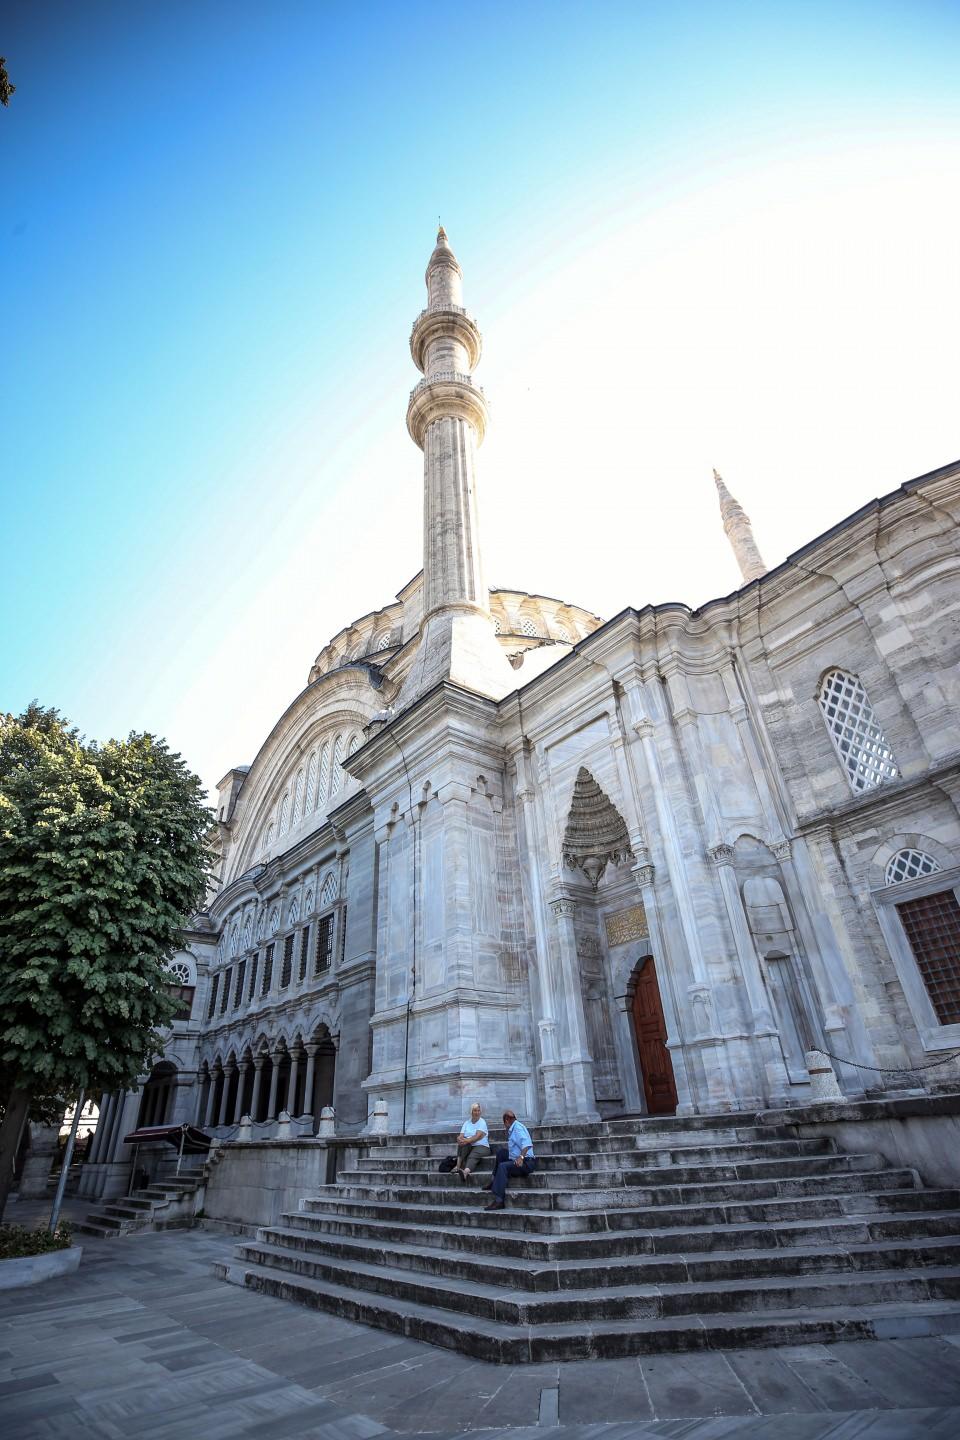 <p>"Osmanlı'nın nuru" olarak adlandırılan Nuruosmaniye Külliyesi, klasik Osmanlı formu ile Batı'nın Barok mimari ve süsleme detaylarının en iyi şekilde sentezlendiği ilk mimari yapı olarak 263 yıldır ihtişamını koruyor. </p>
